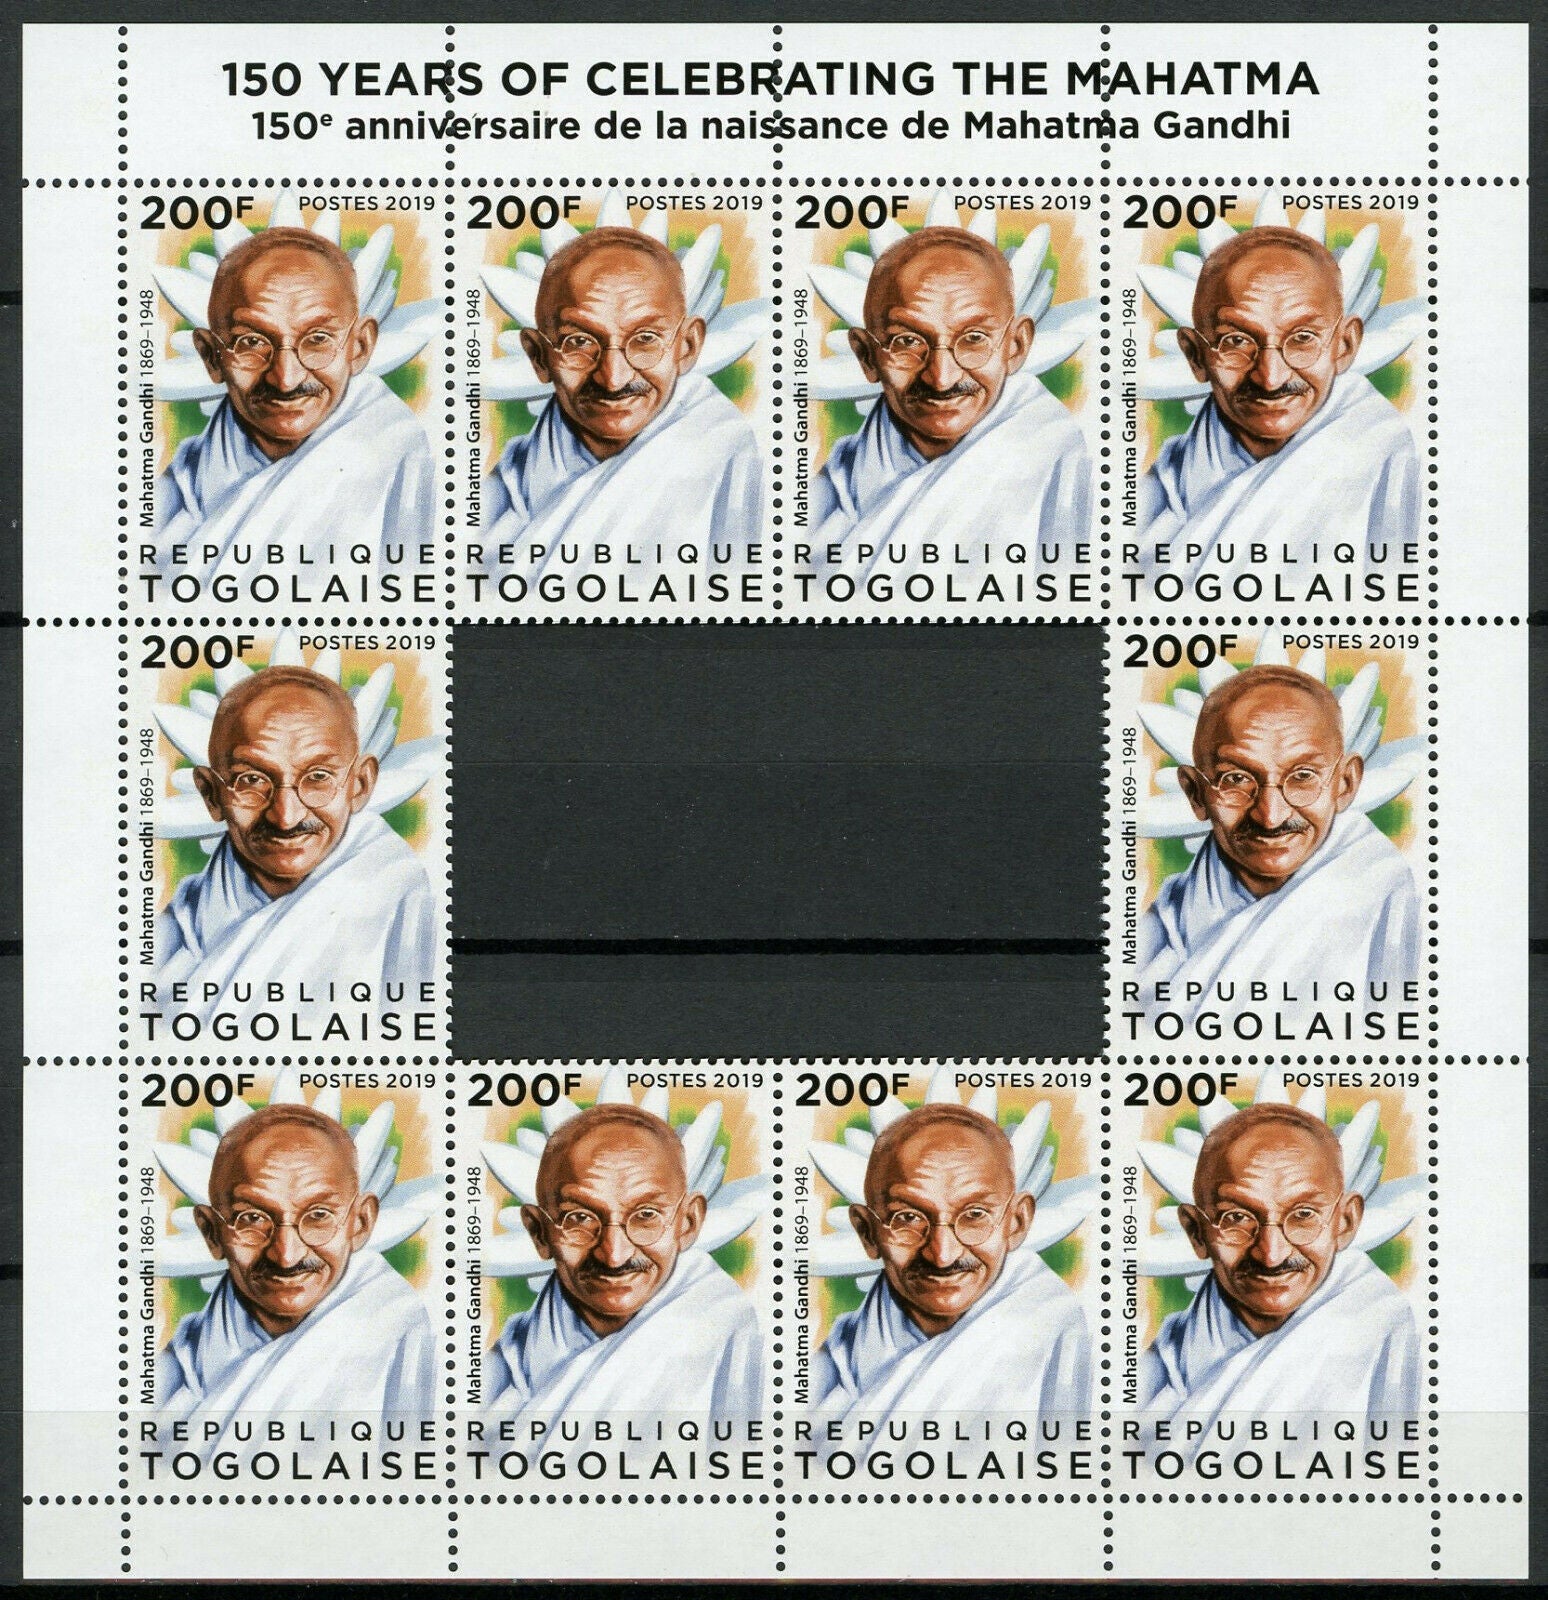 Togo Mahatma Gandhi Stamps 2019 MNH Famous People Historical Figures 10v M/S